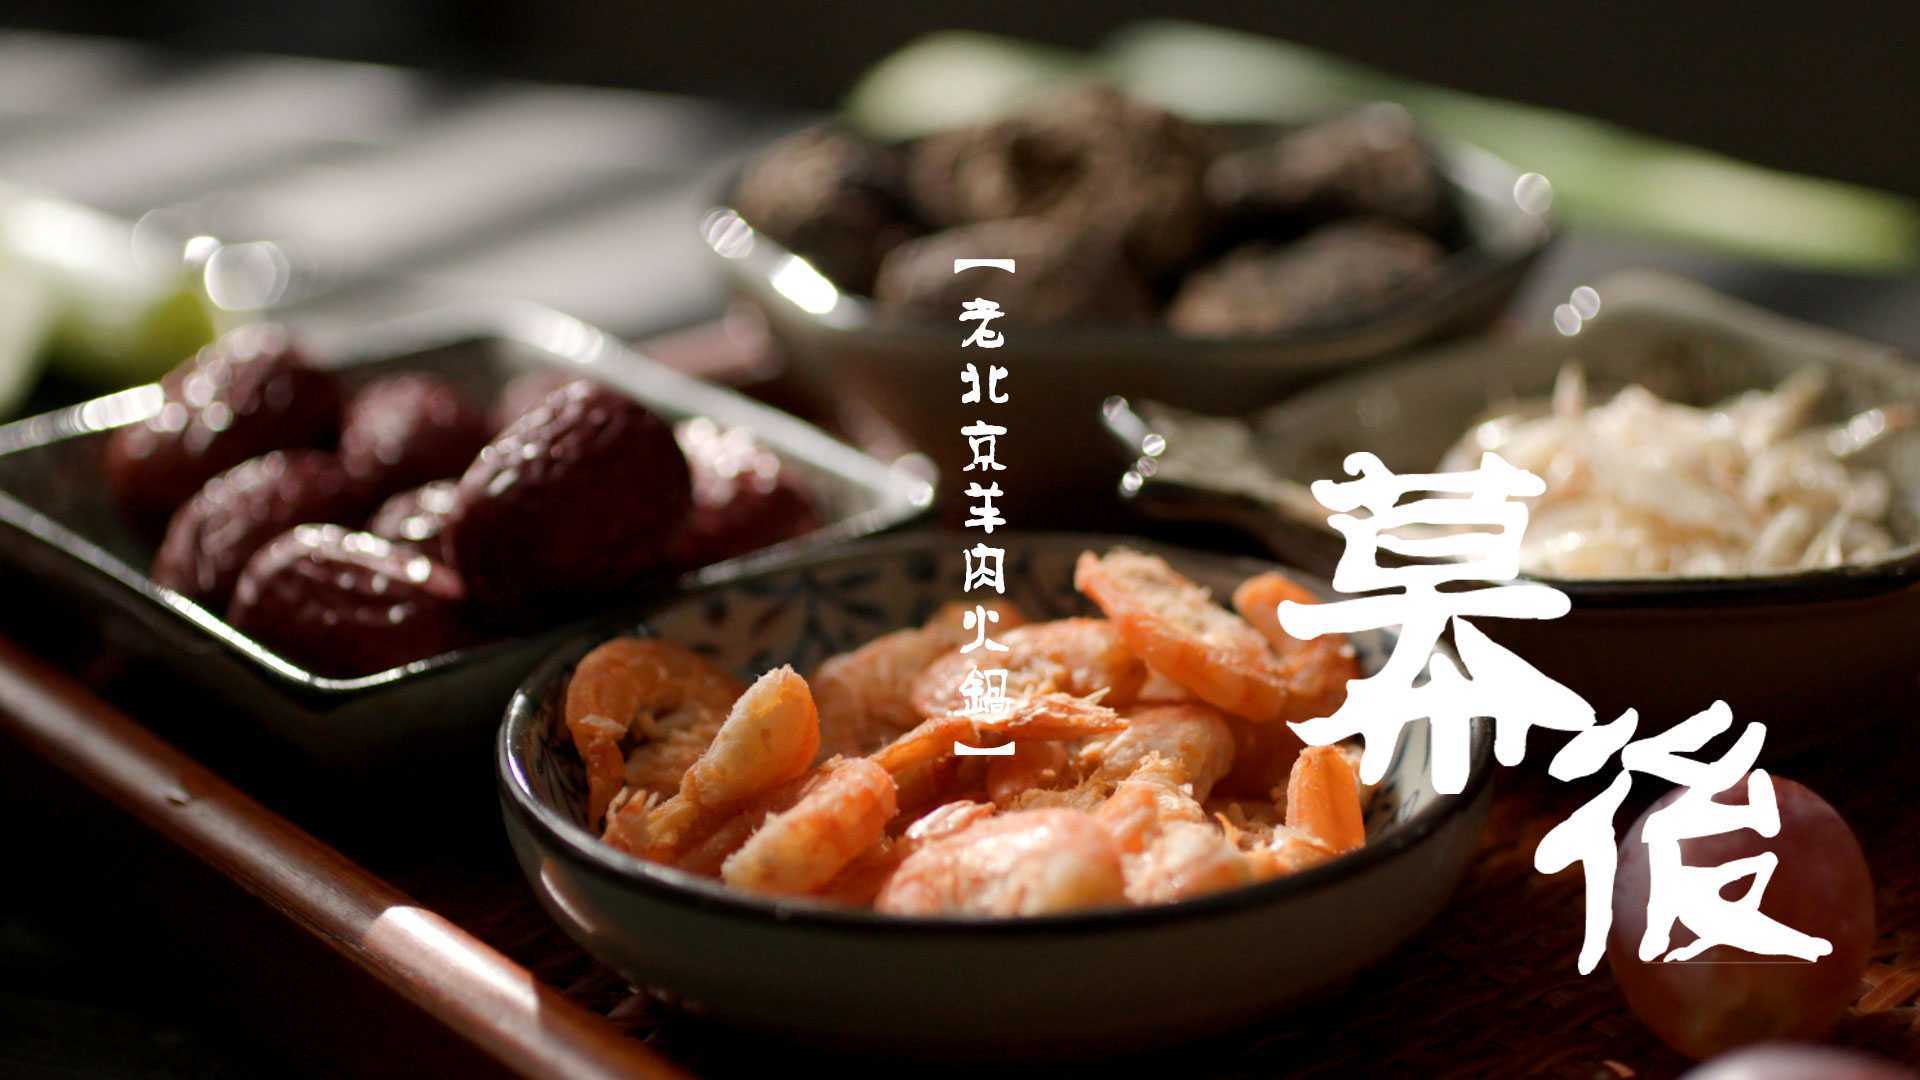 【广告幕后】老北京涮羊肉 美食小短片幕后分享